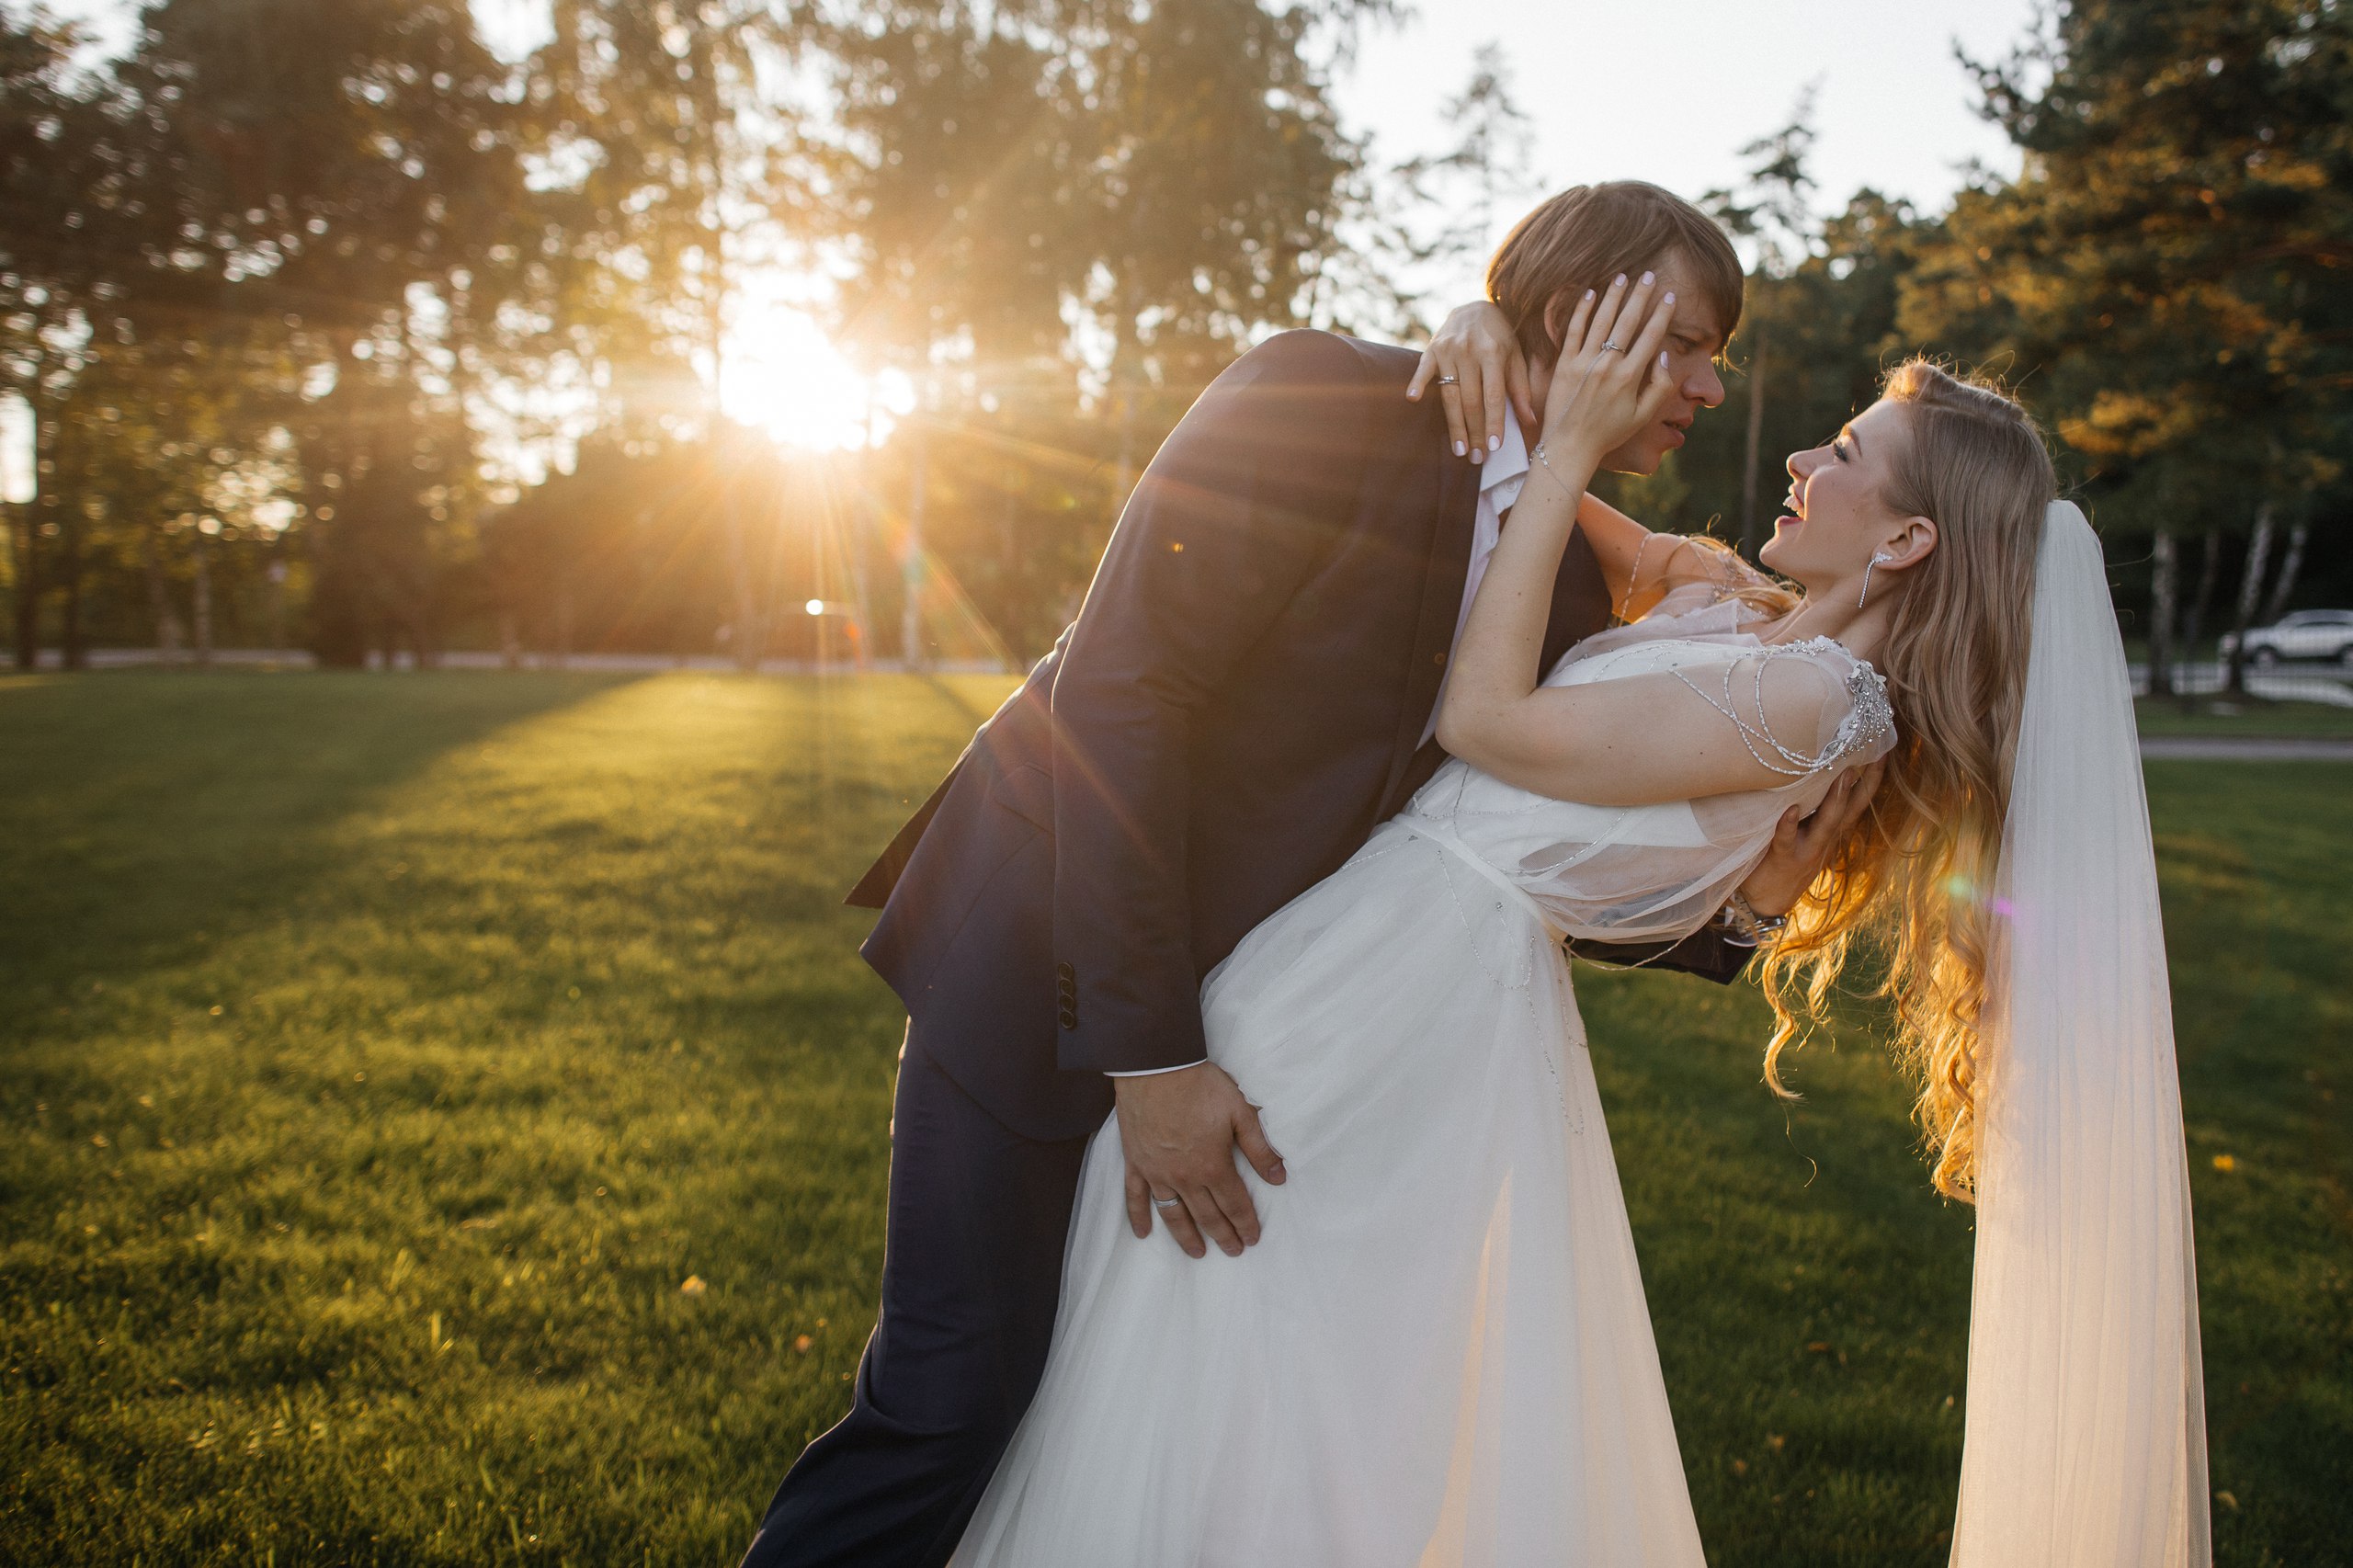 Свадебная фотография: как определиться со стилем и найти правильного фотографа